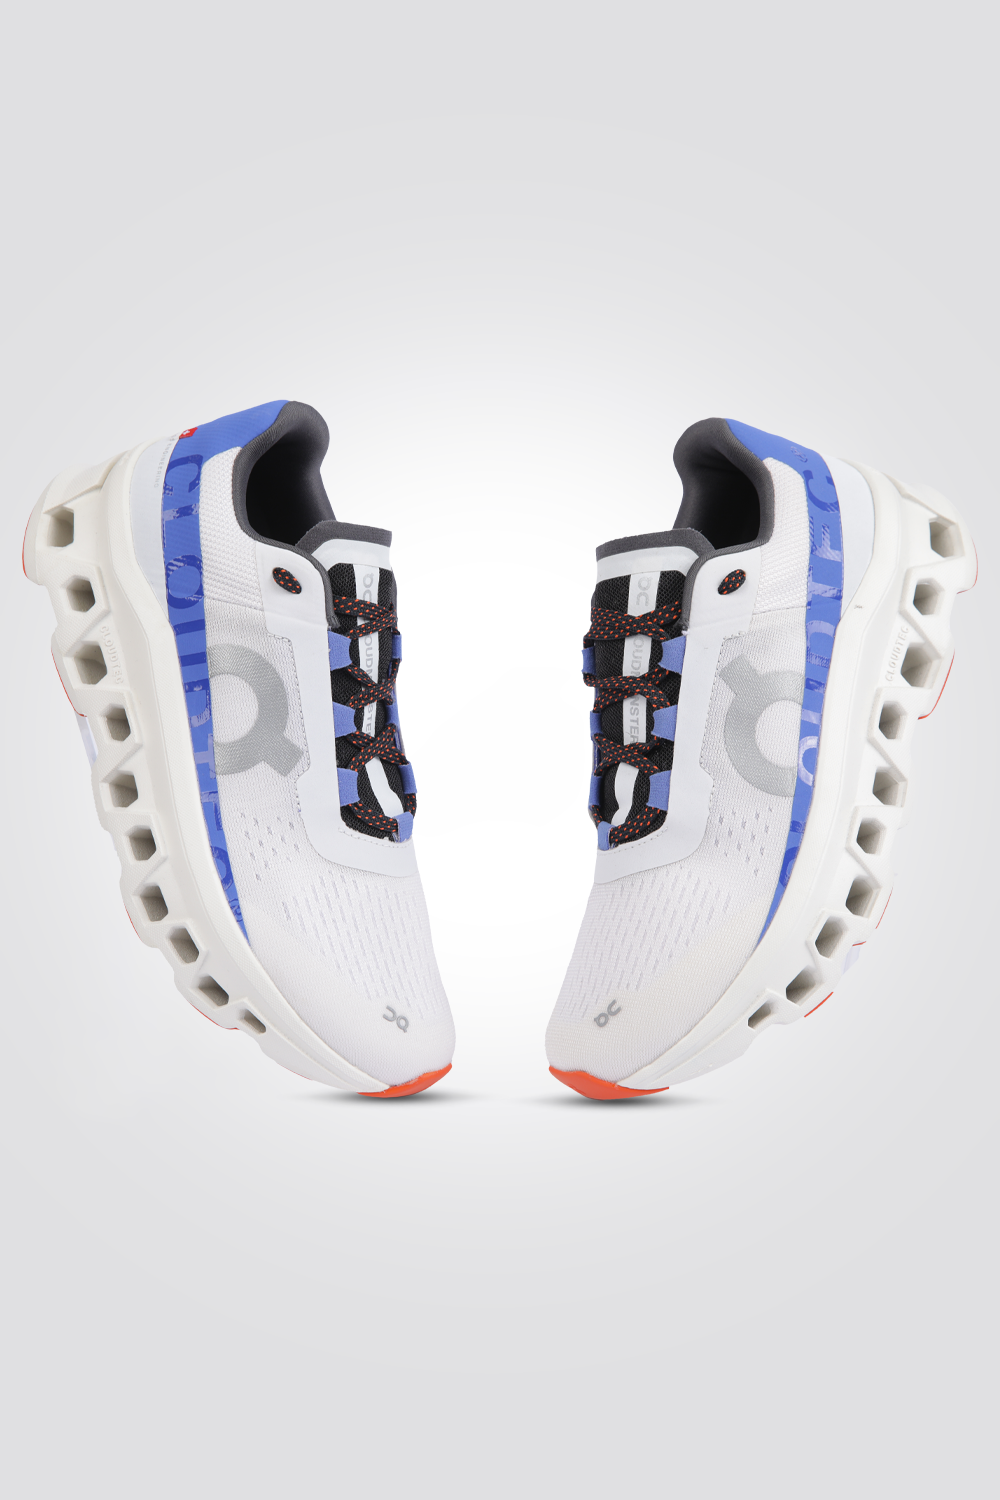 נעלי ספורט לנשים Cloudmonster Frost בצבע לבן וכחול